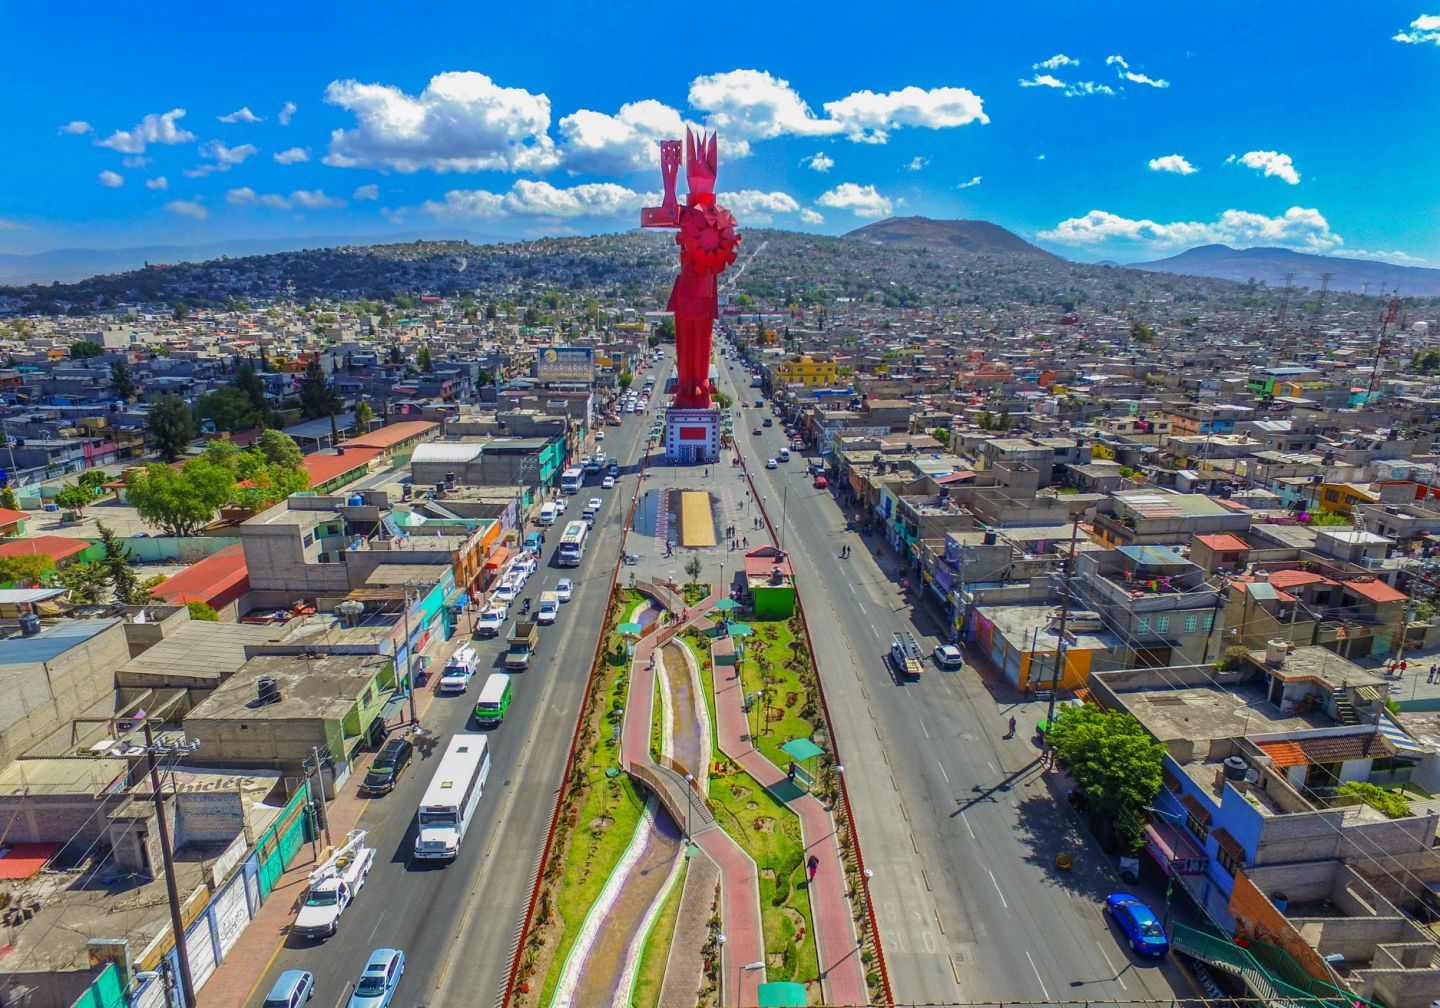 En 21 años el progreso en Chimalhuacan al que ahora se le califica como municipio modelo se debe a una lucha de un pueblo organizado y trabajador: Movimiento Antorchista